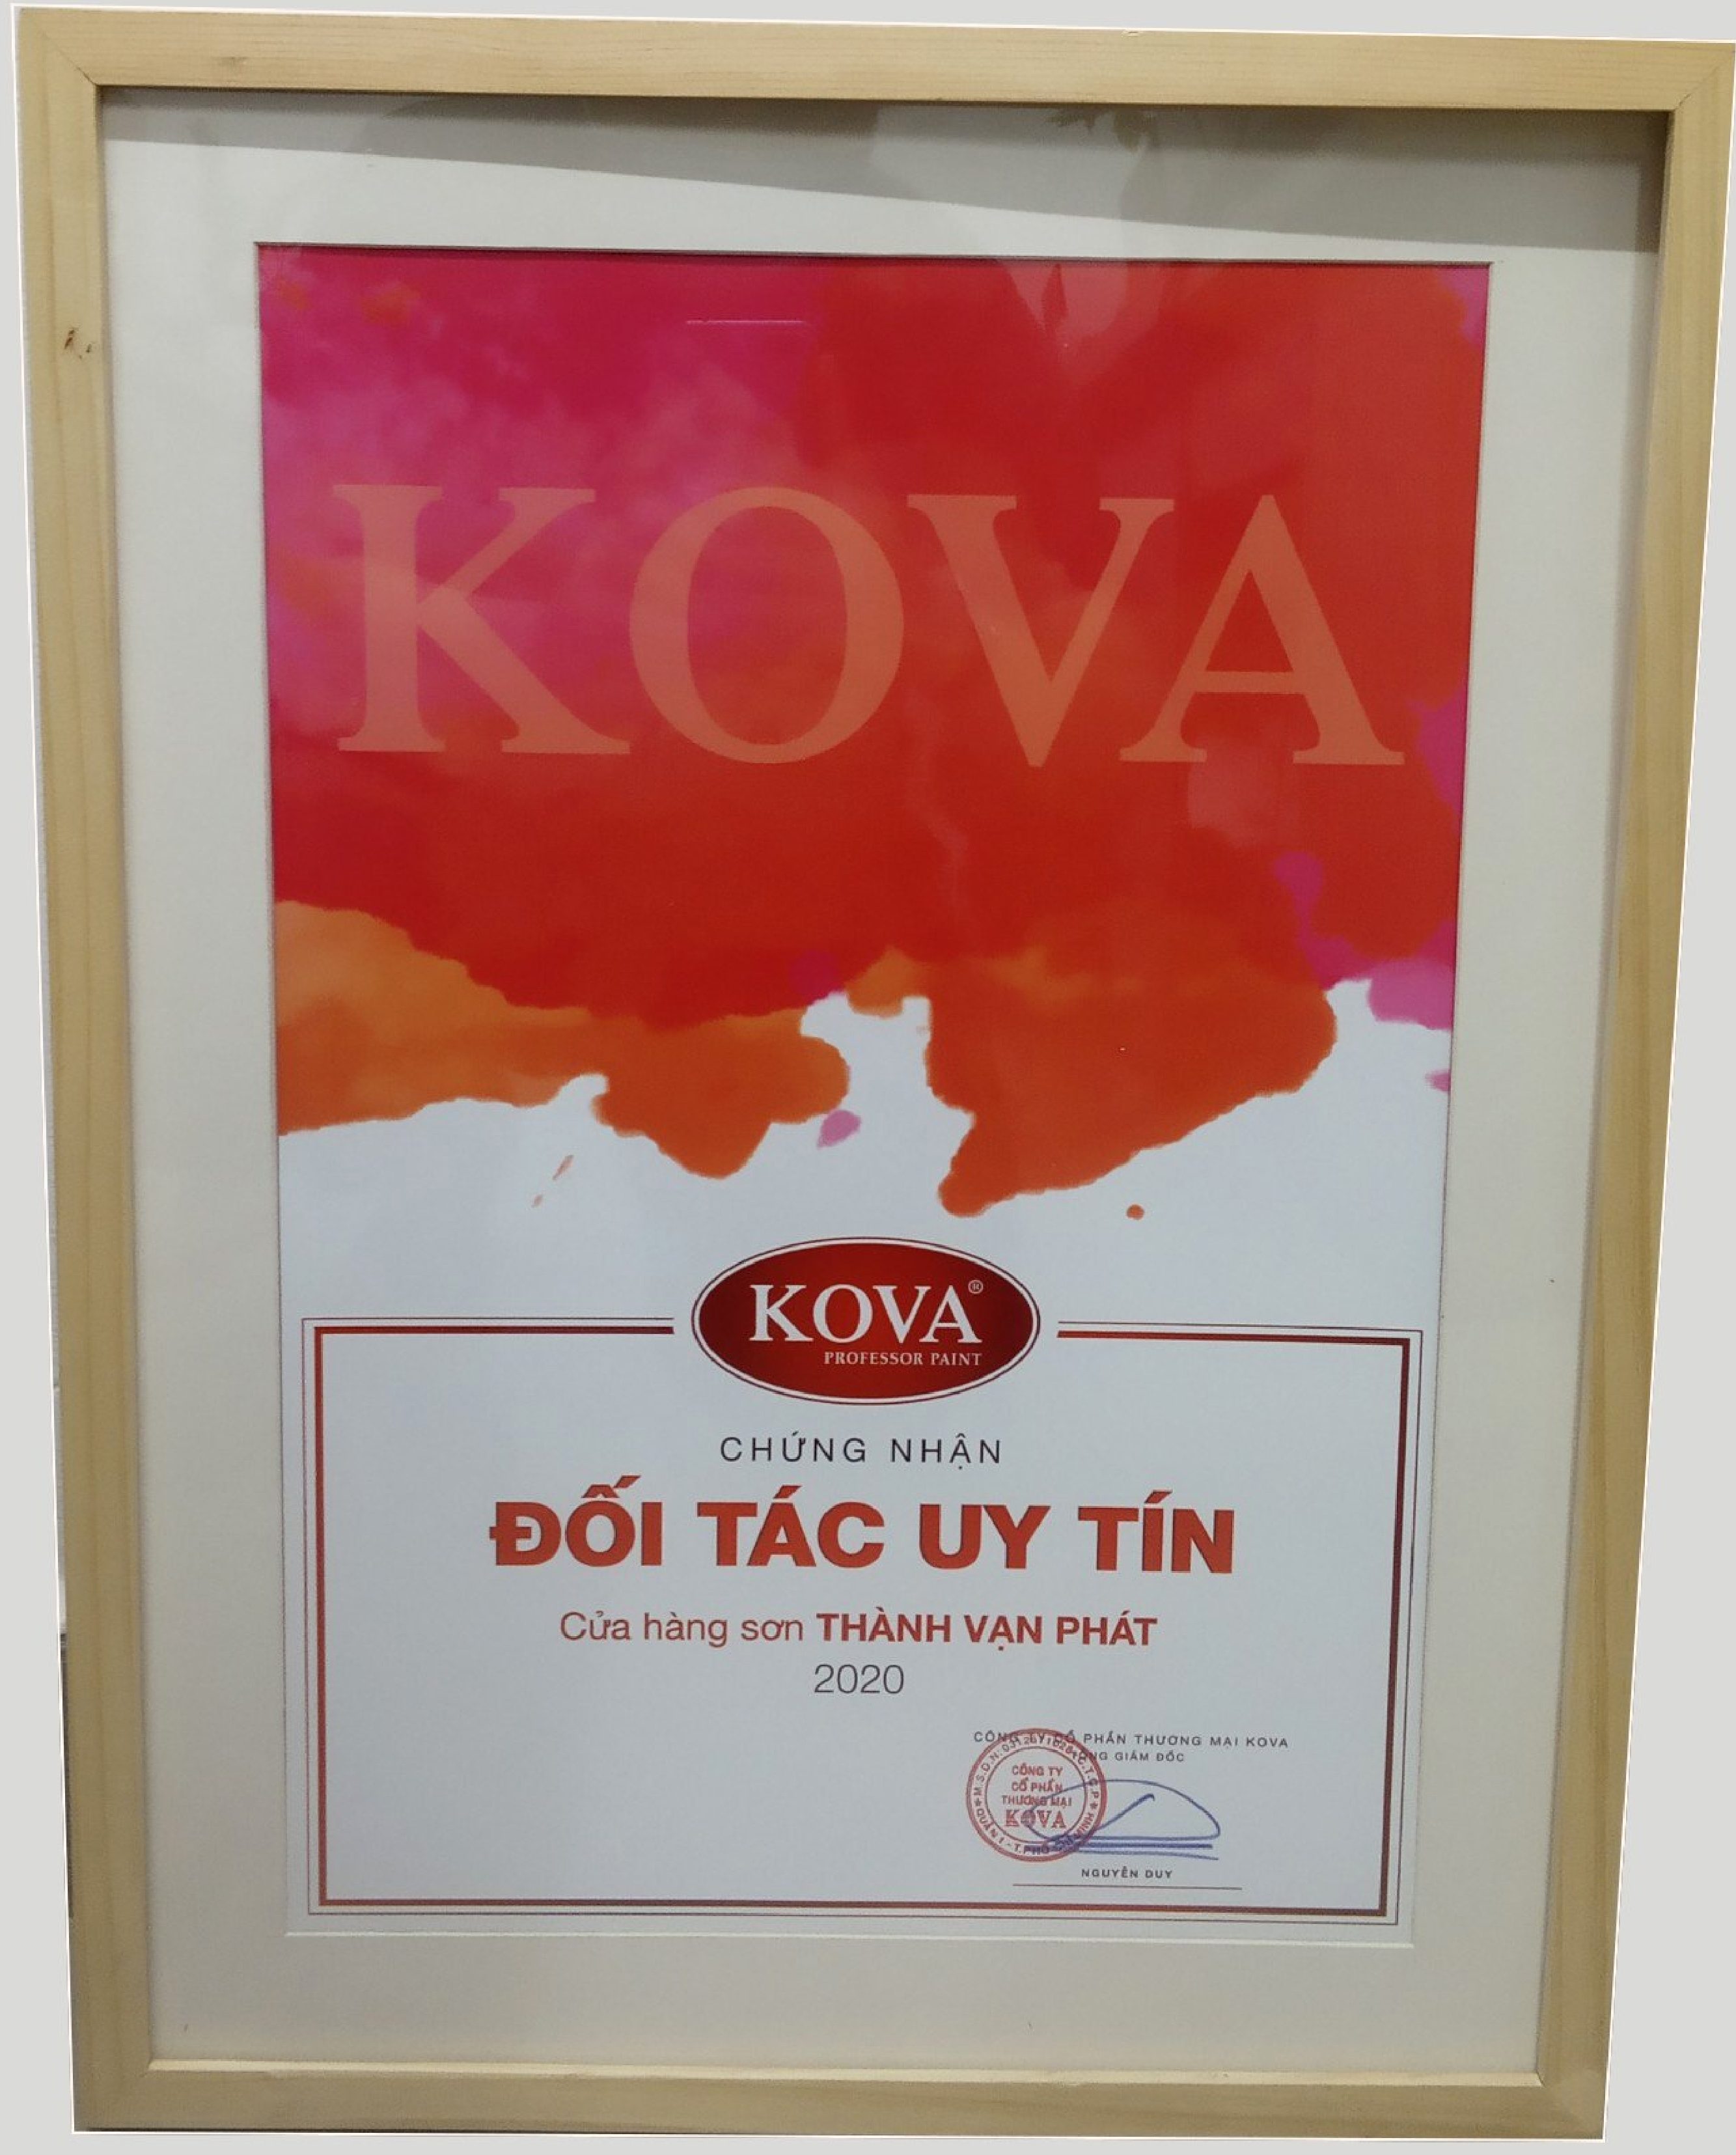 Sơn Kova Gia Lai: Thử sức với chất lượng vượt trội của Sơn Kova Gia Lai, đem lại cho ngôi nhà của bạn sự mới mẻ và hoàn thiện. Hãy đến và khám phá ngay những sản phẩm sơn Kova tại Gia Lai ngay hôm nay.